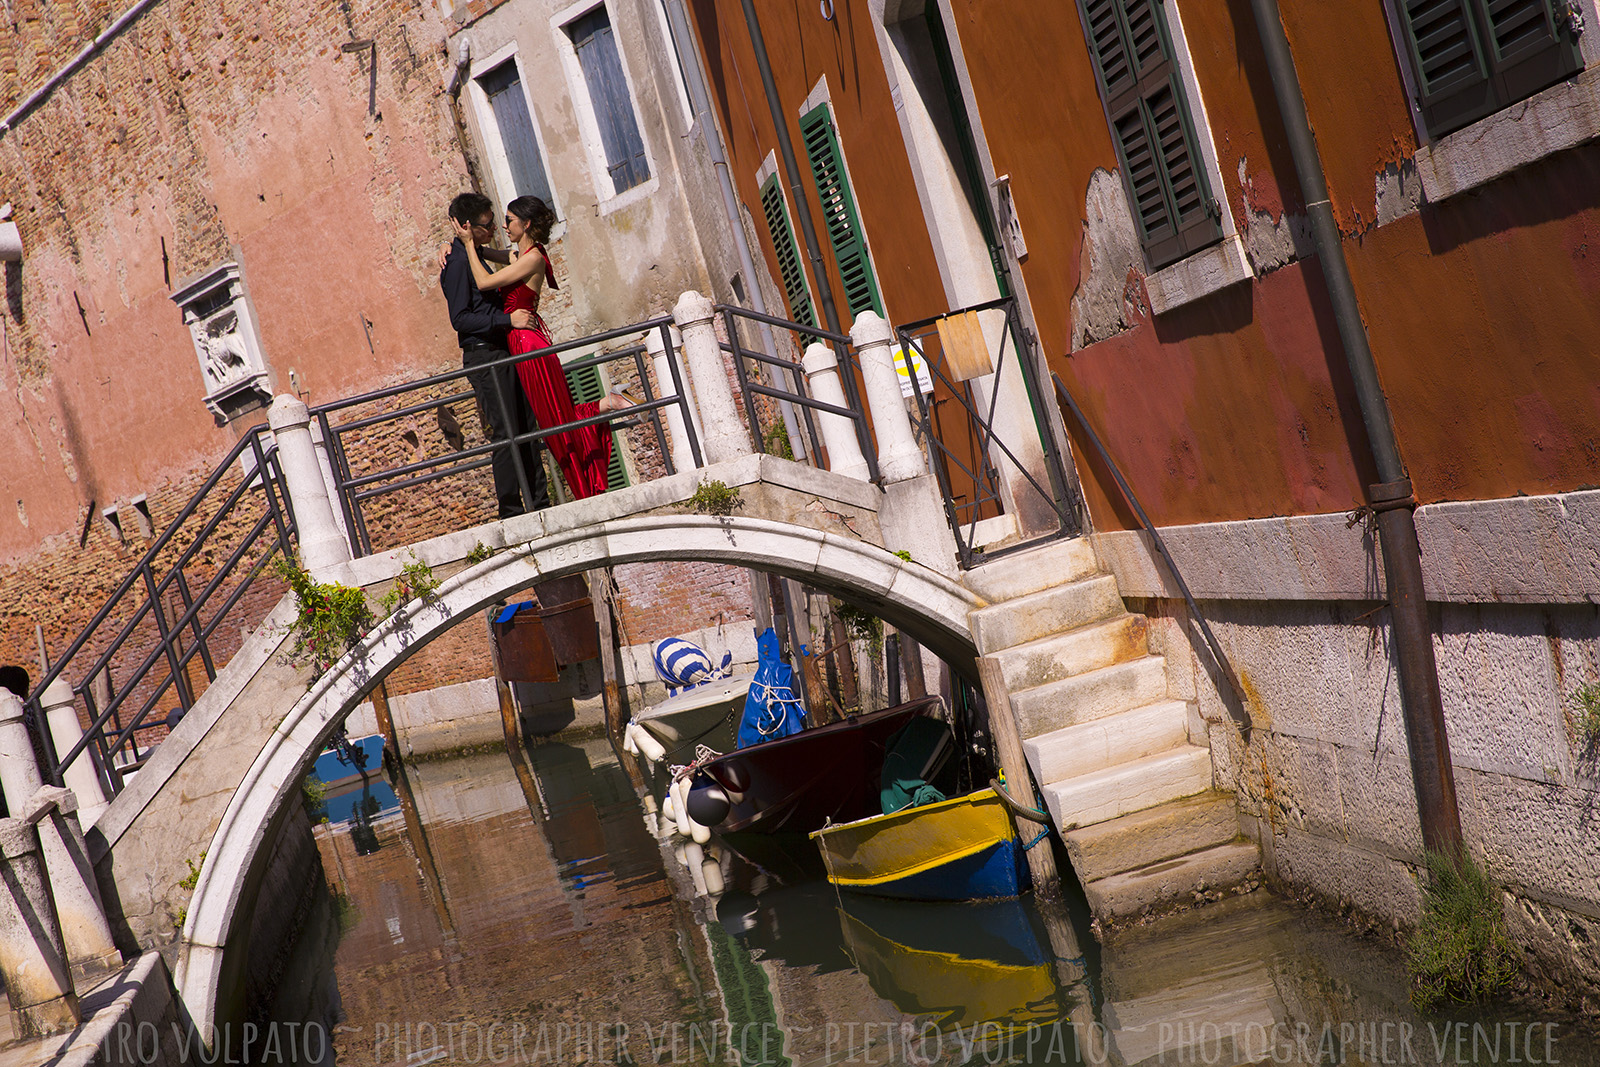 Venezia servizio fotografico viaggio di nozze ~ Passeggiata e giro in gondola ~ Fotografo Venezia servizio foto luna di miele